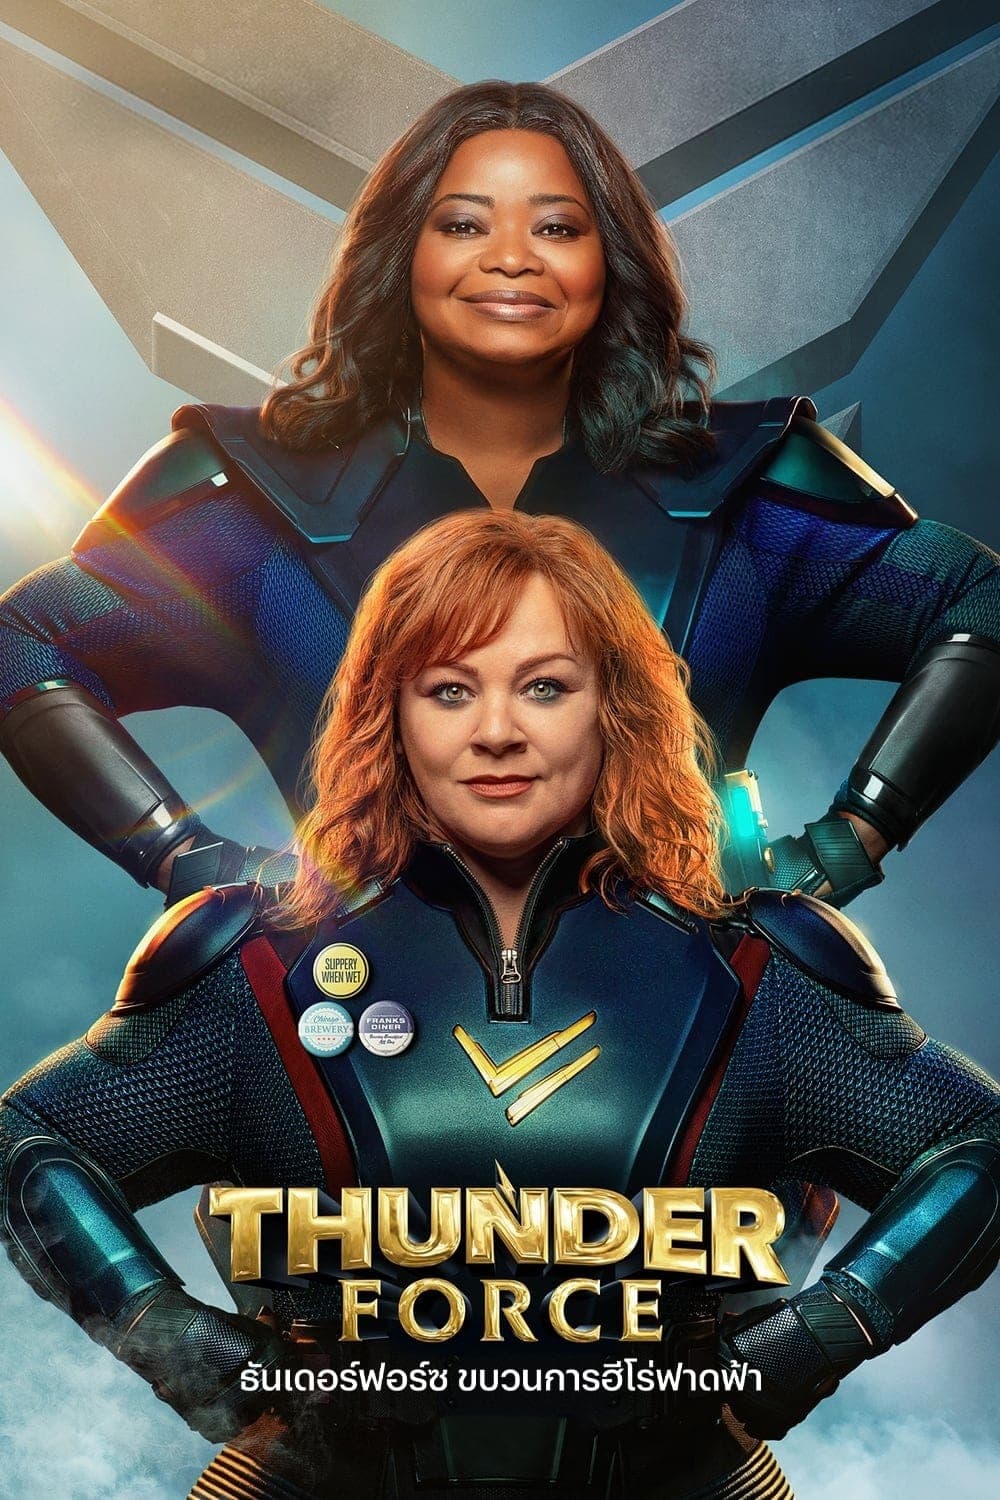 Thunder Force ธันเดอร์ฟอร์ซ ขบวนการฮีโร่ฟาดฟ้า (2021)